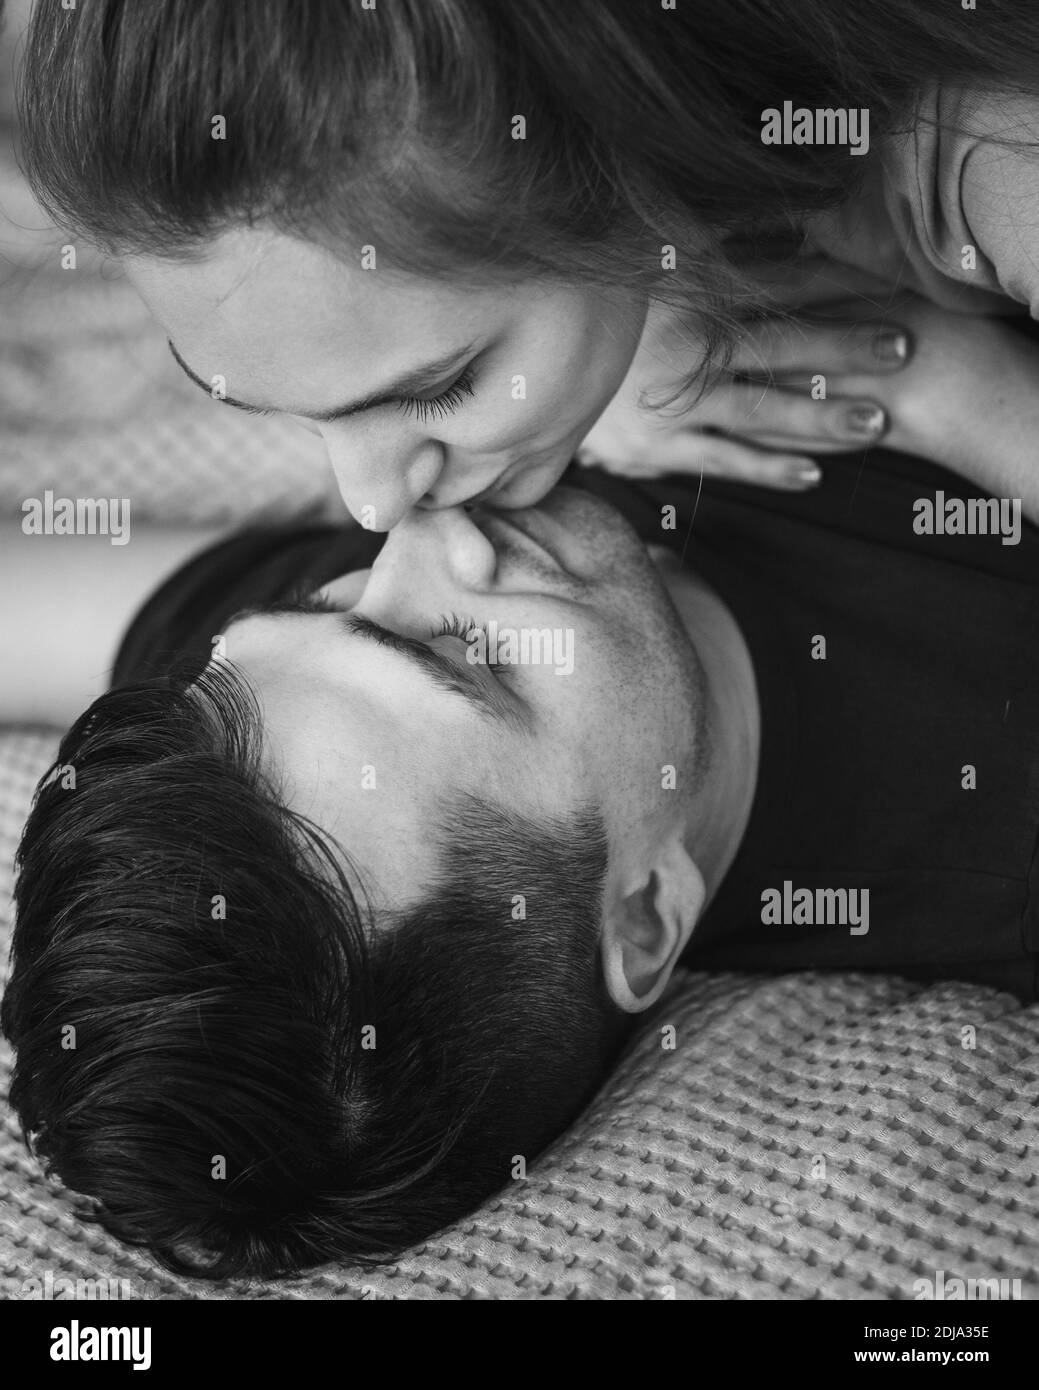 Couple au lit Banque d'images noir et blanc - Alamy